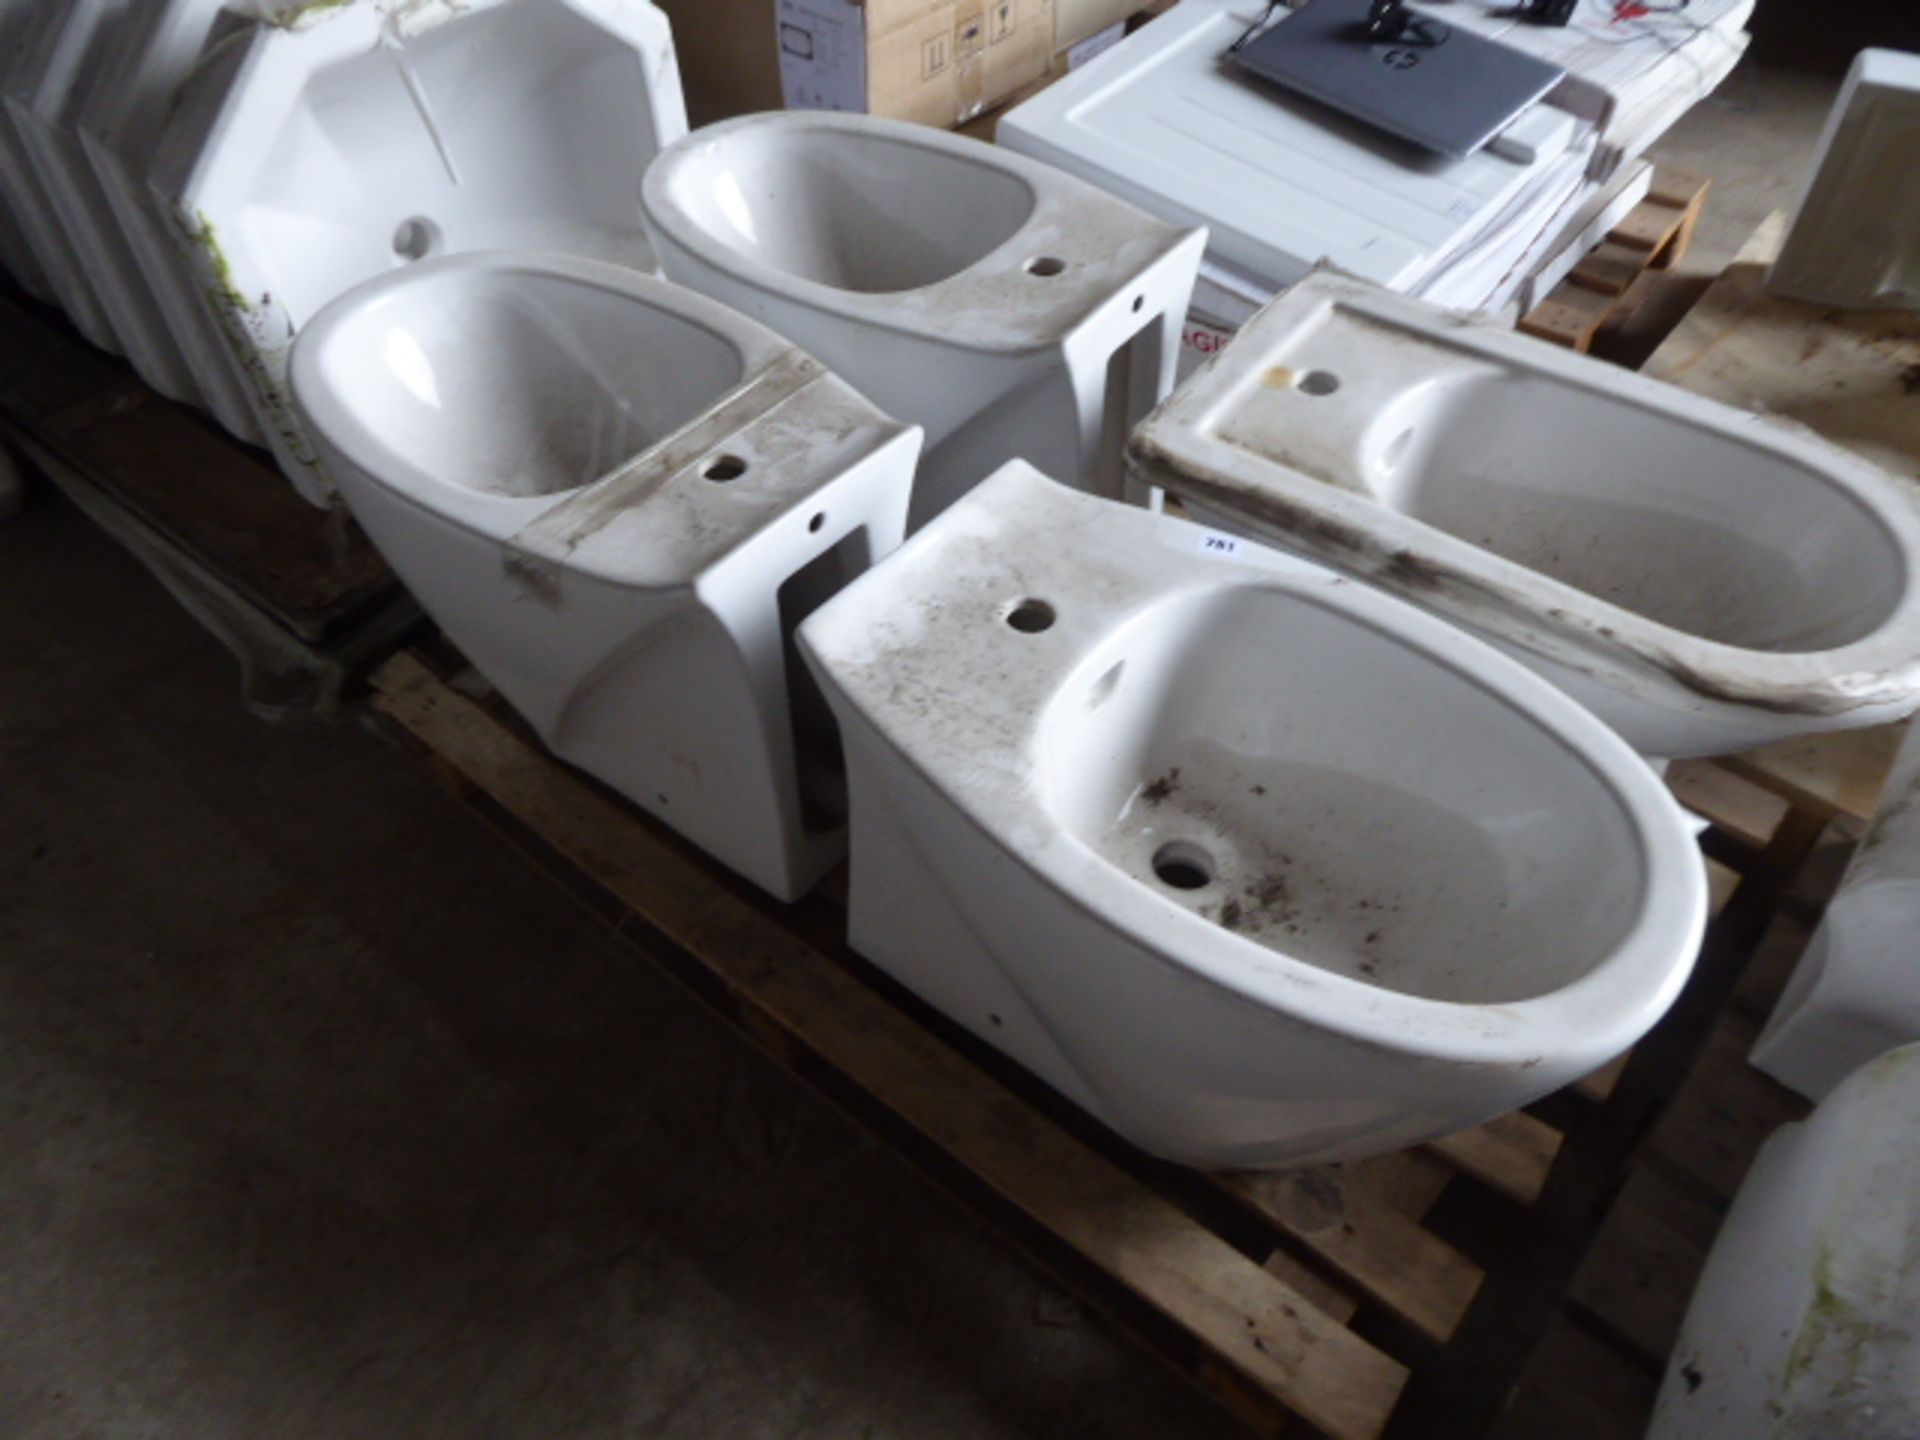 4 toilet pans